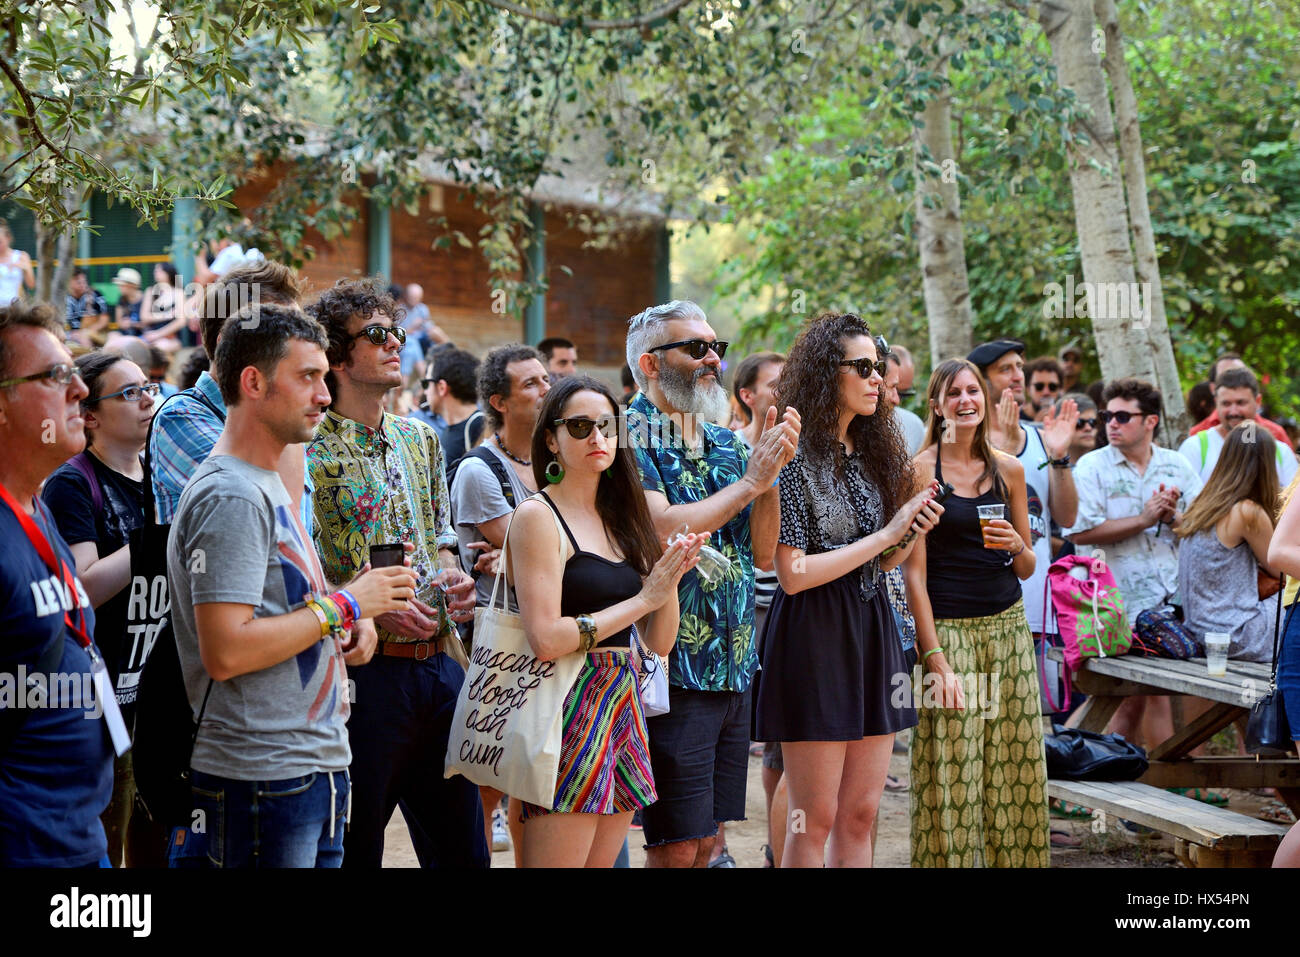 Barcelone - Jul 3 : Les gens de l'auditoire regarder un concert au Festival de Vida le 3 juillet 2015 à Barcelone, Espagne. Banque D'Images